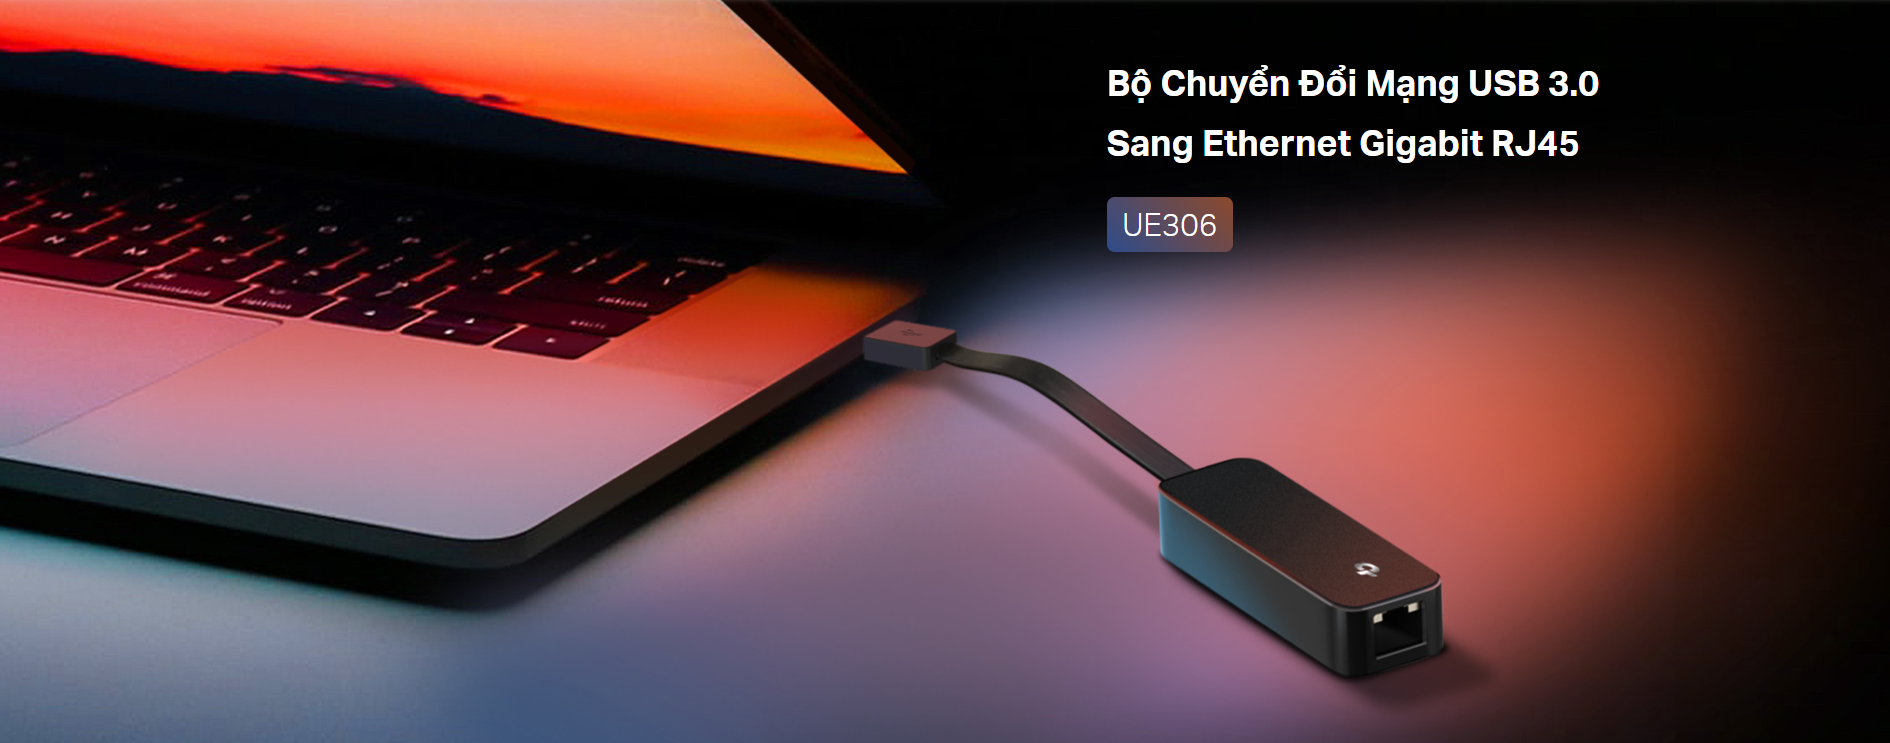 Giắc chuyển đổi từ USB 3.0 sang LAN Gigabit TP-Link UE306 màu đen 